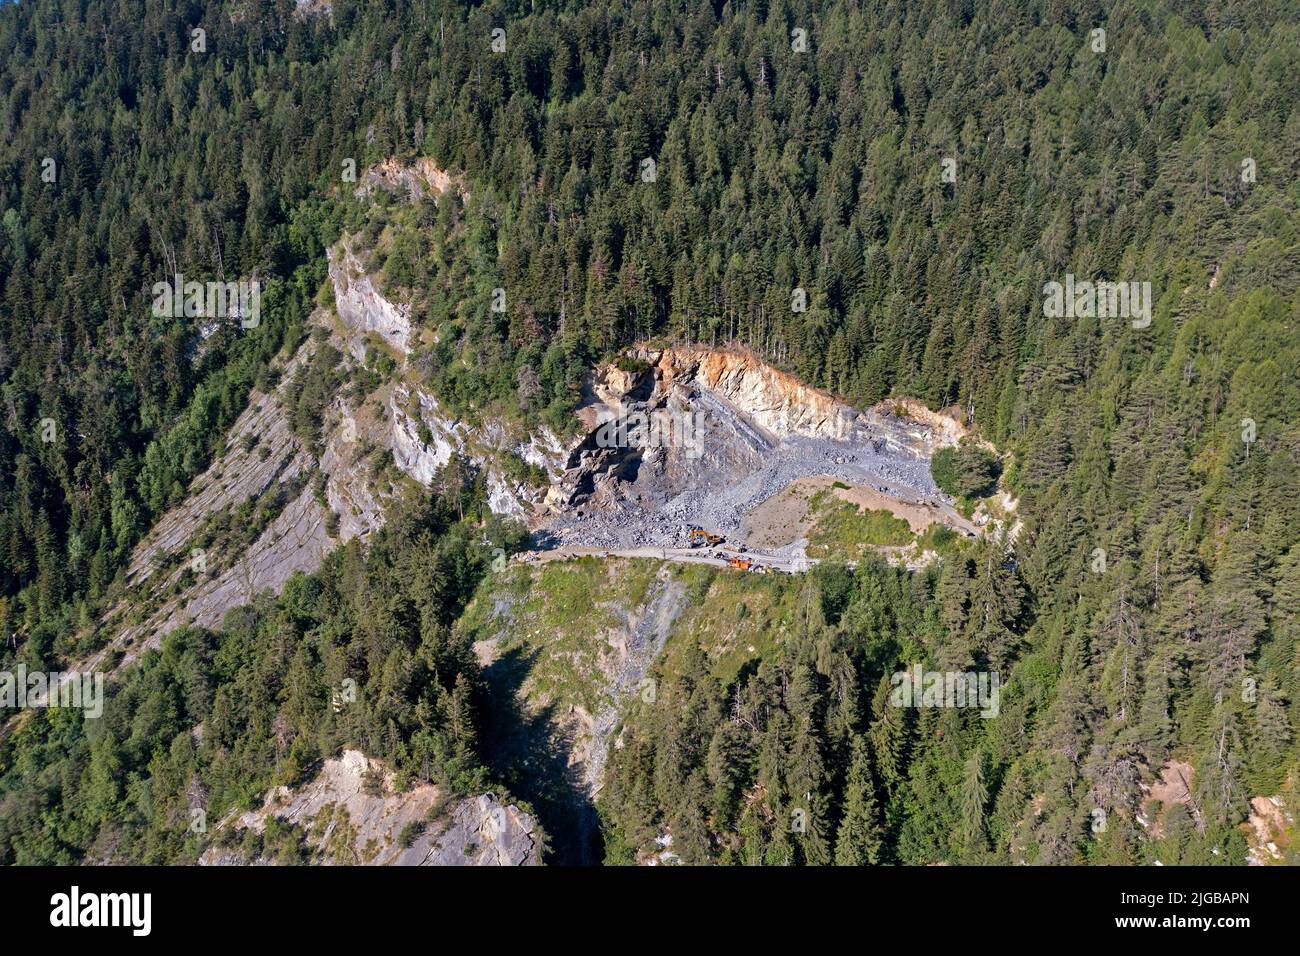 Carrière dans une forêt, carrière de granit Dugny, Leytron, Valais, Suisse Banque D'Images